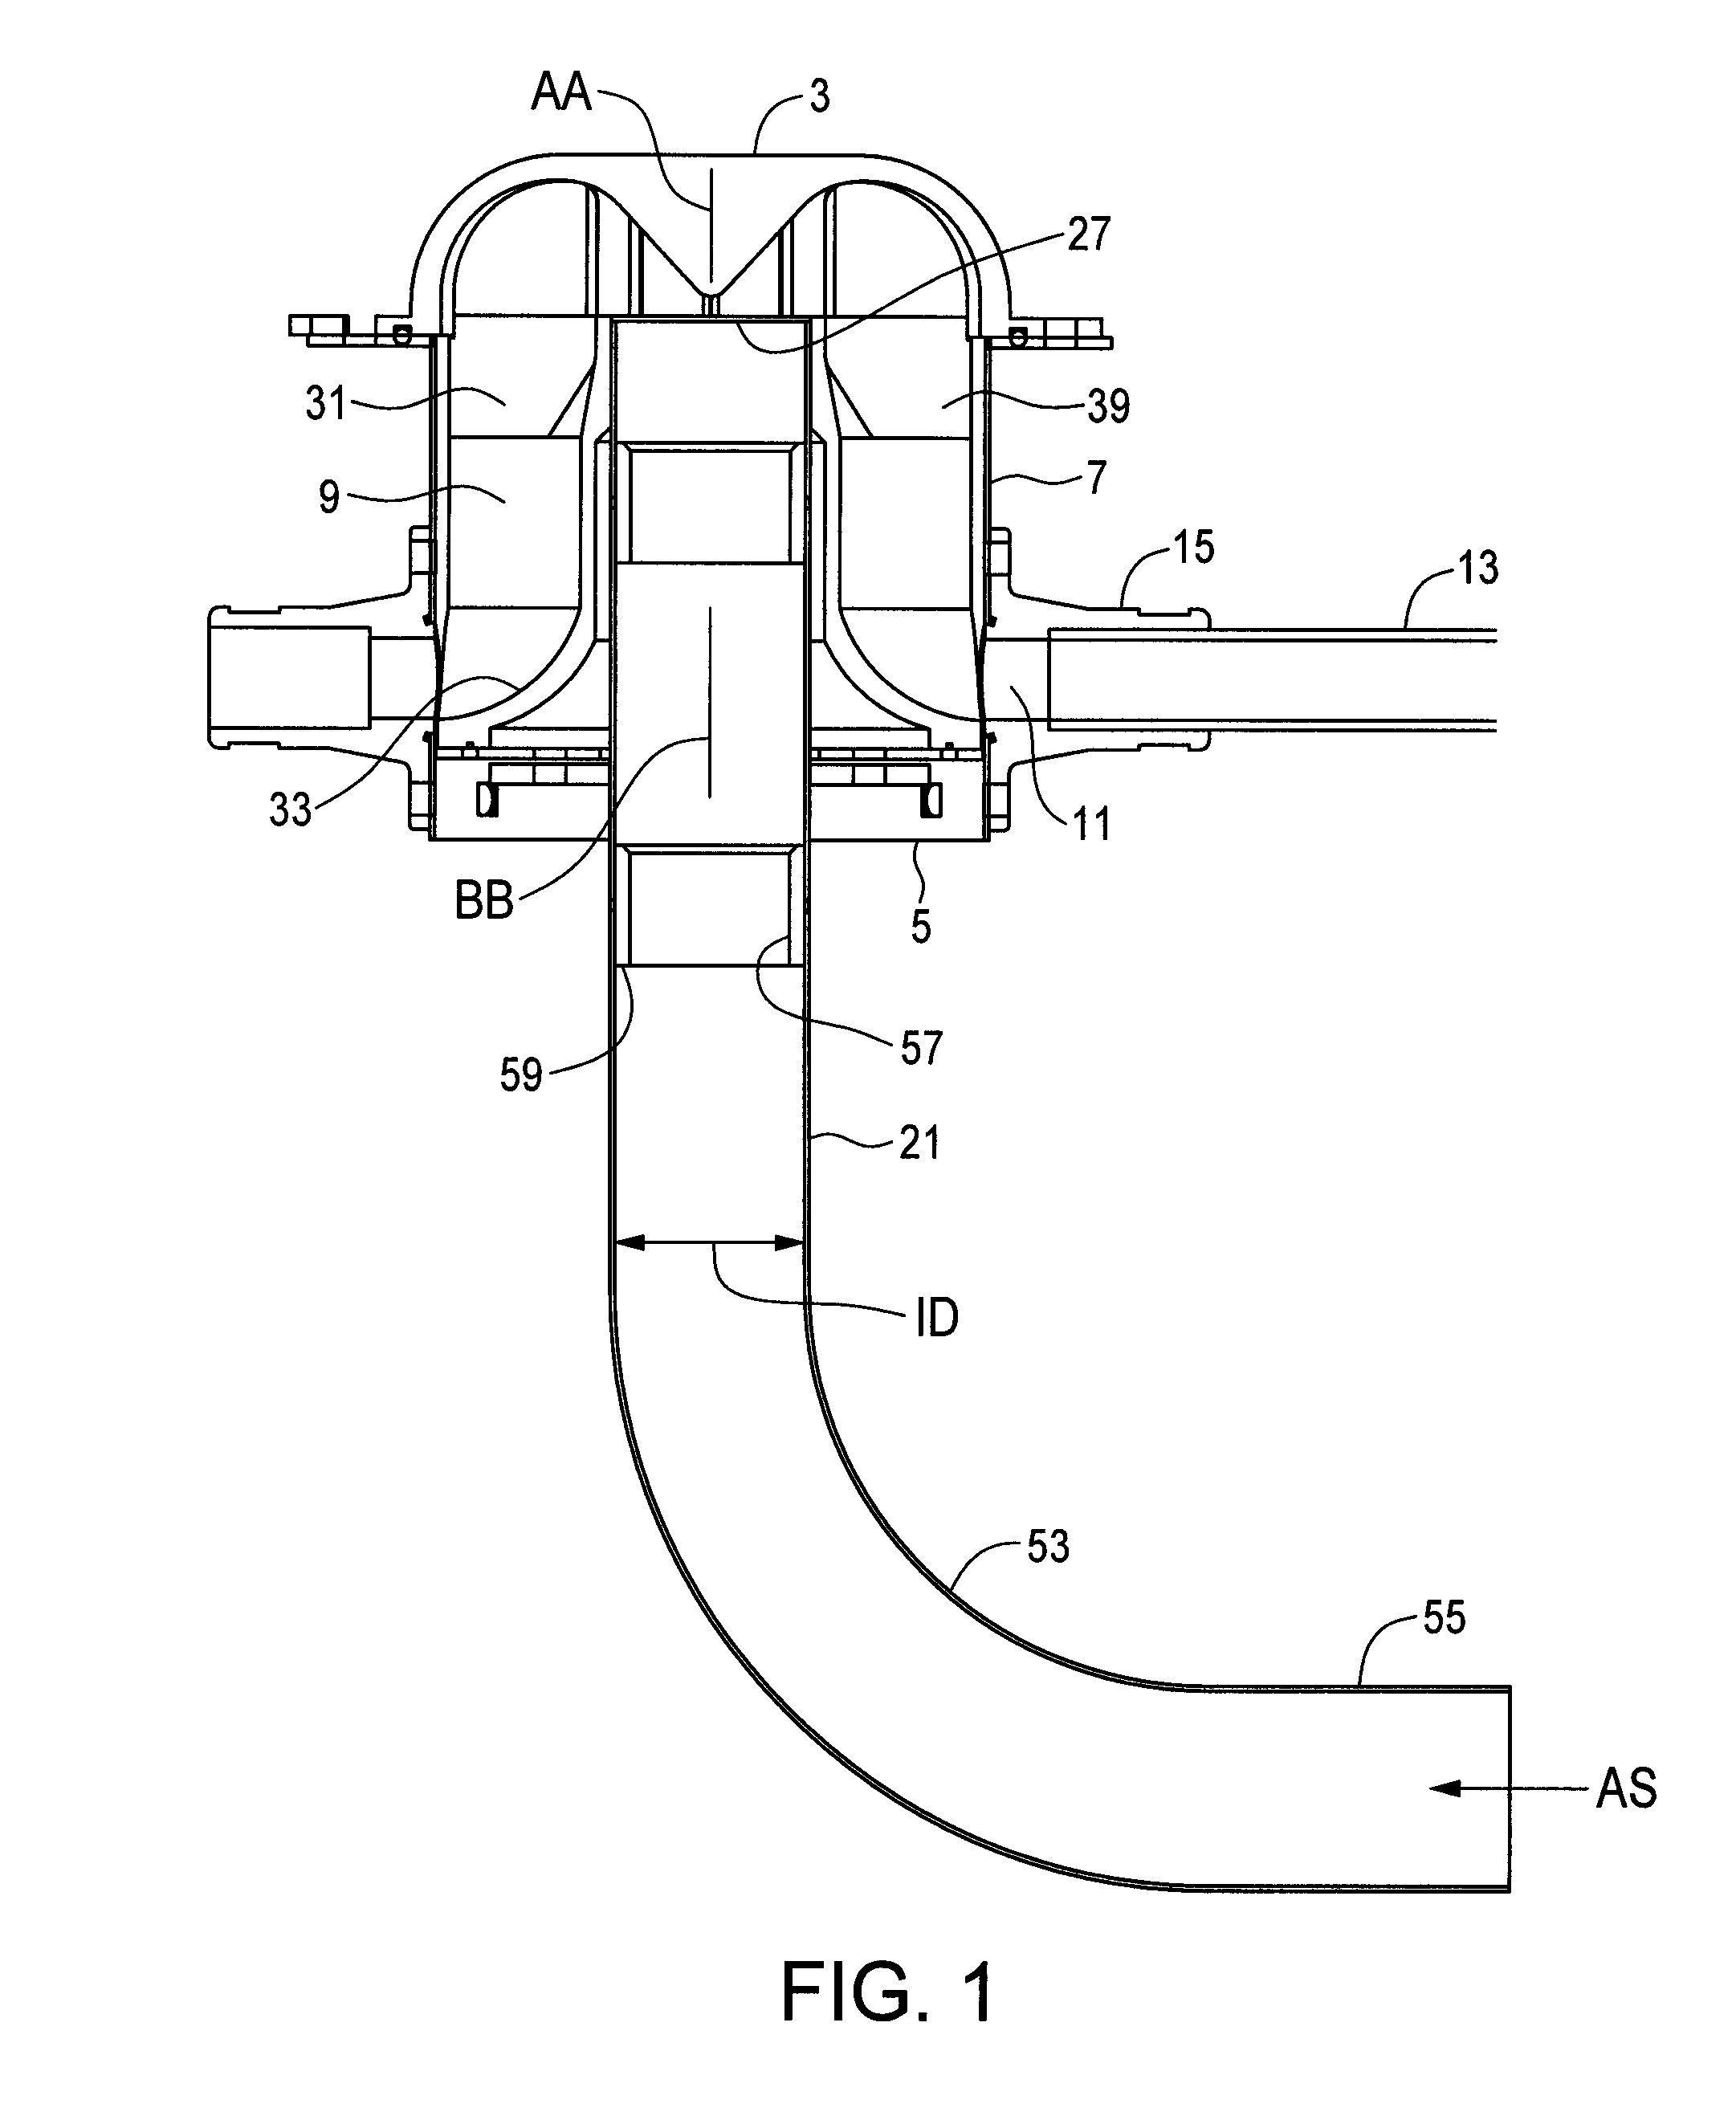 Air seeder manifold apparatus